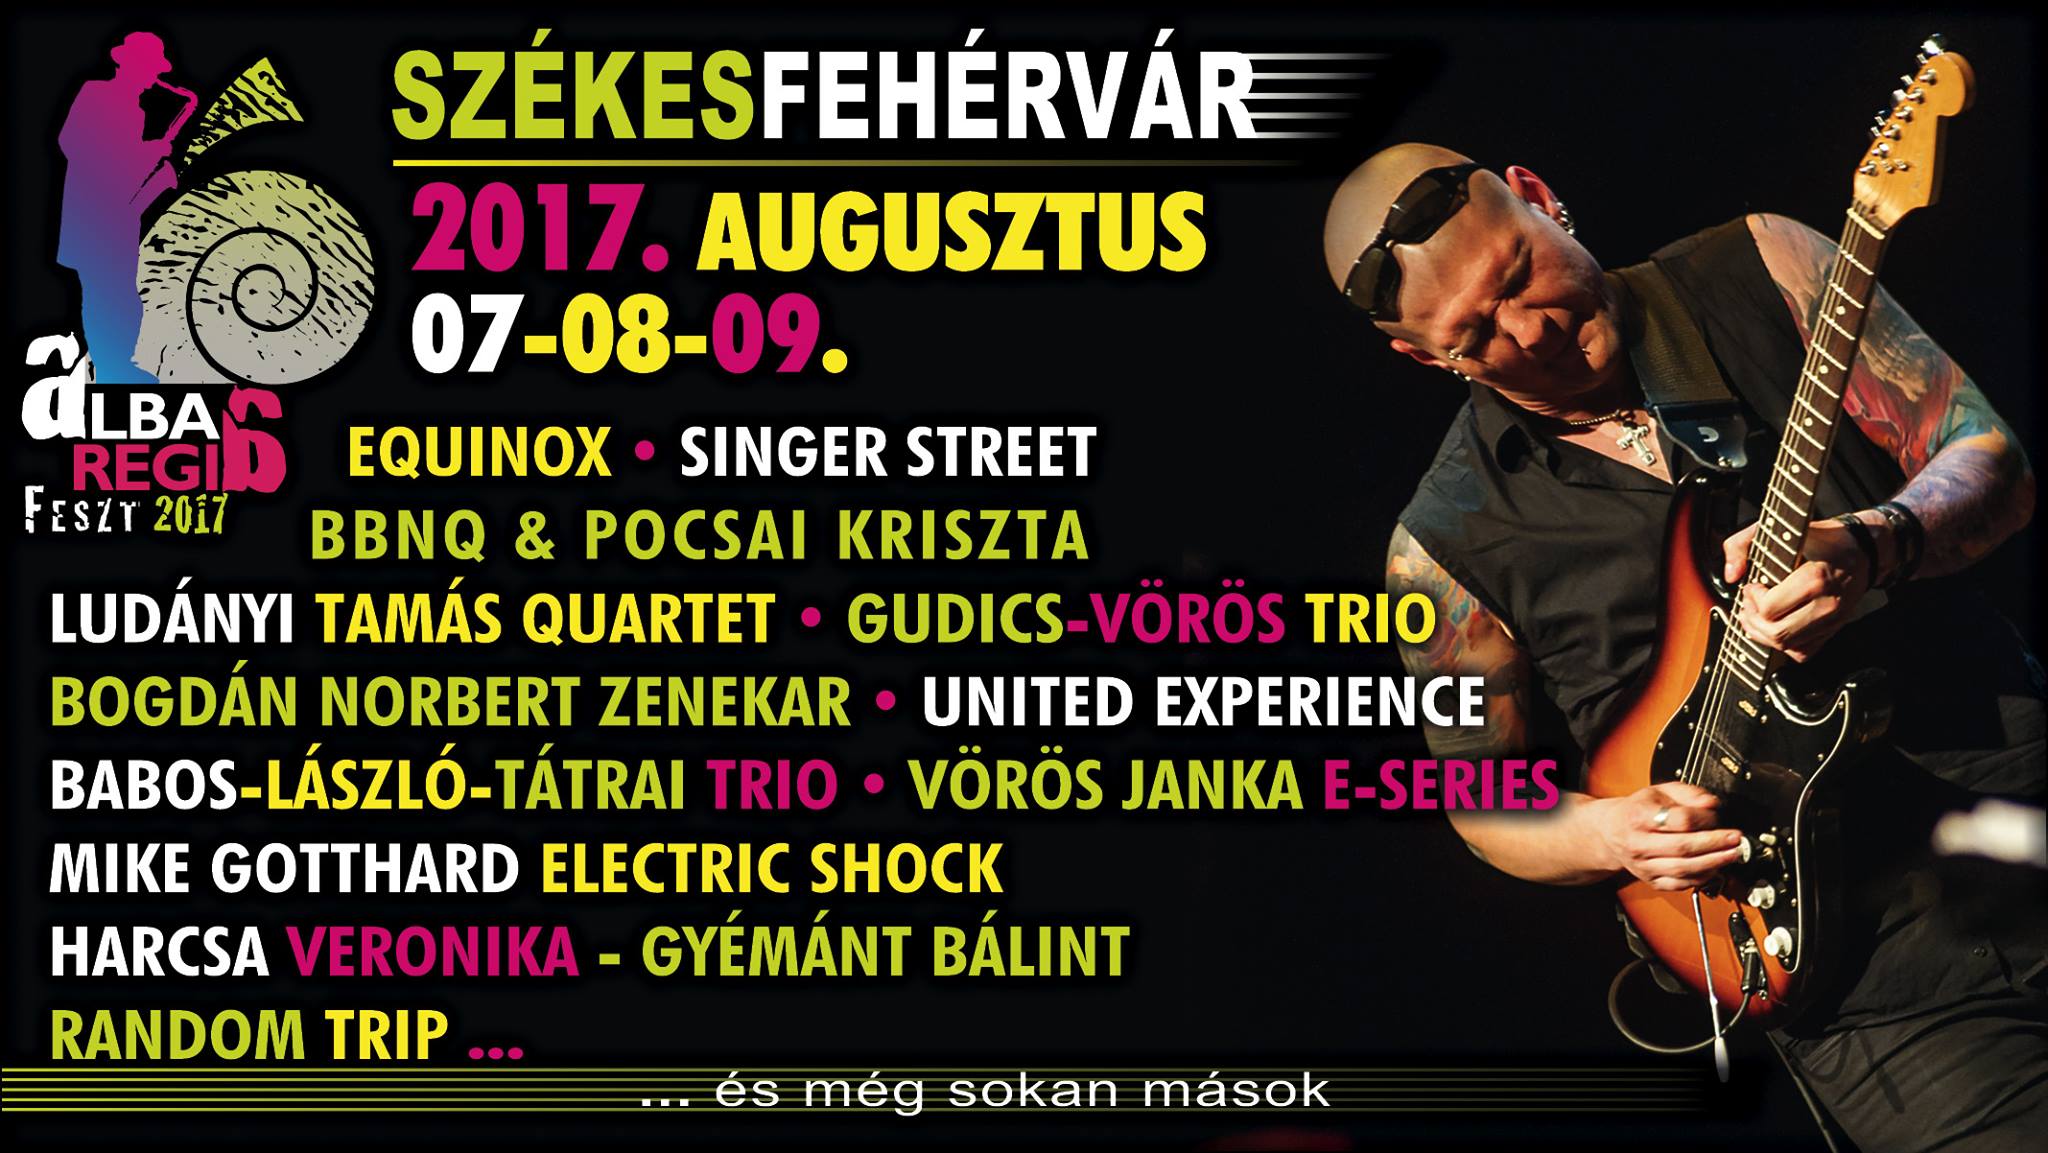 Alba Regia Feszt - Jazz a nyárban augusztus 7 és 9 között Székesfehérváron